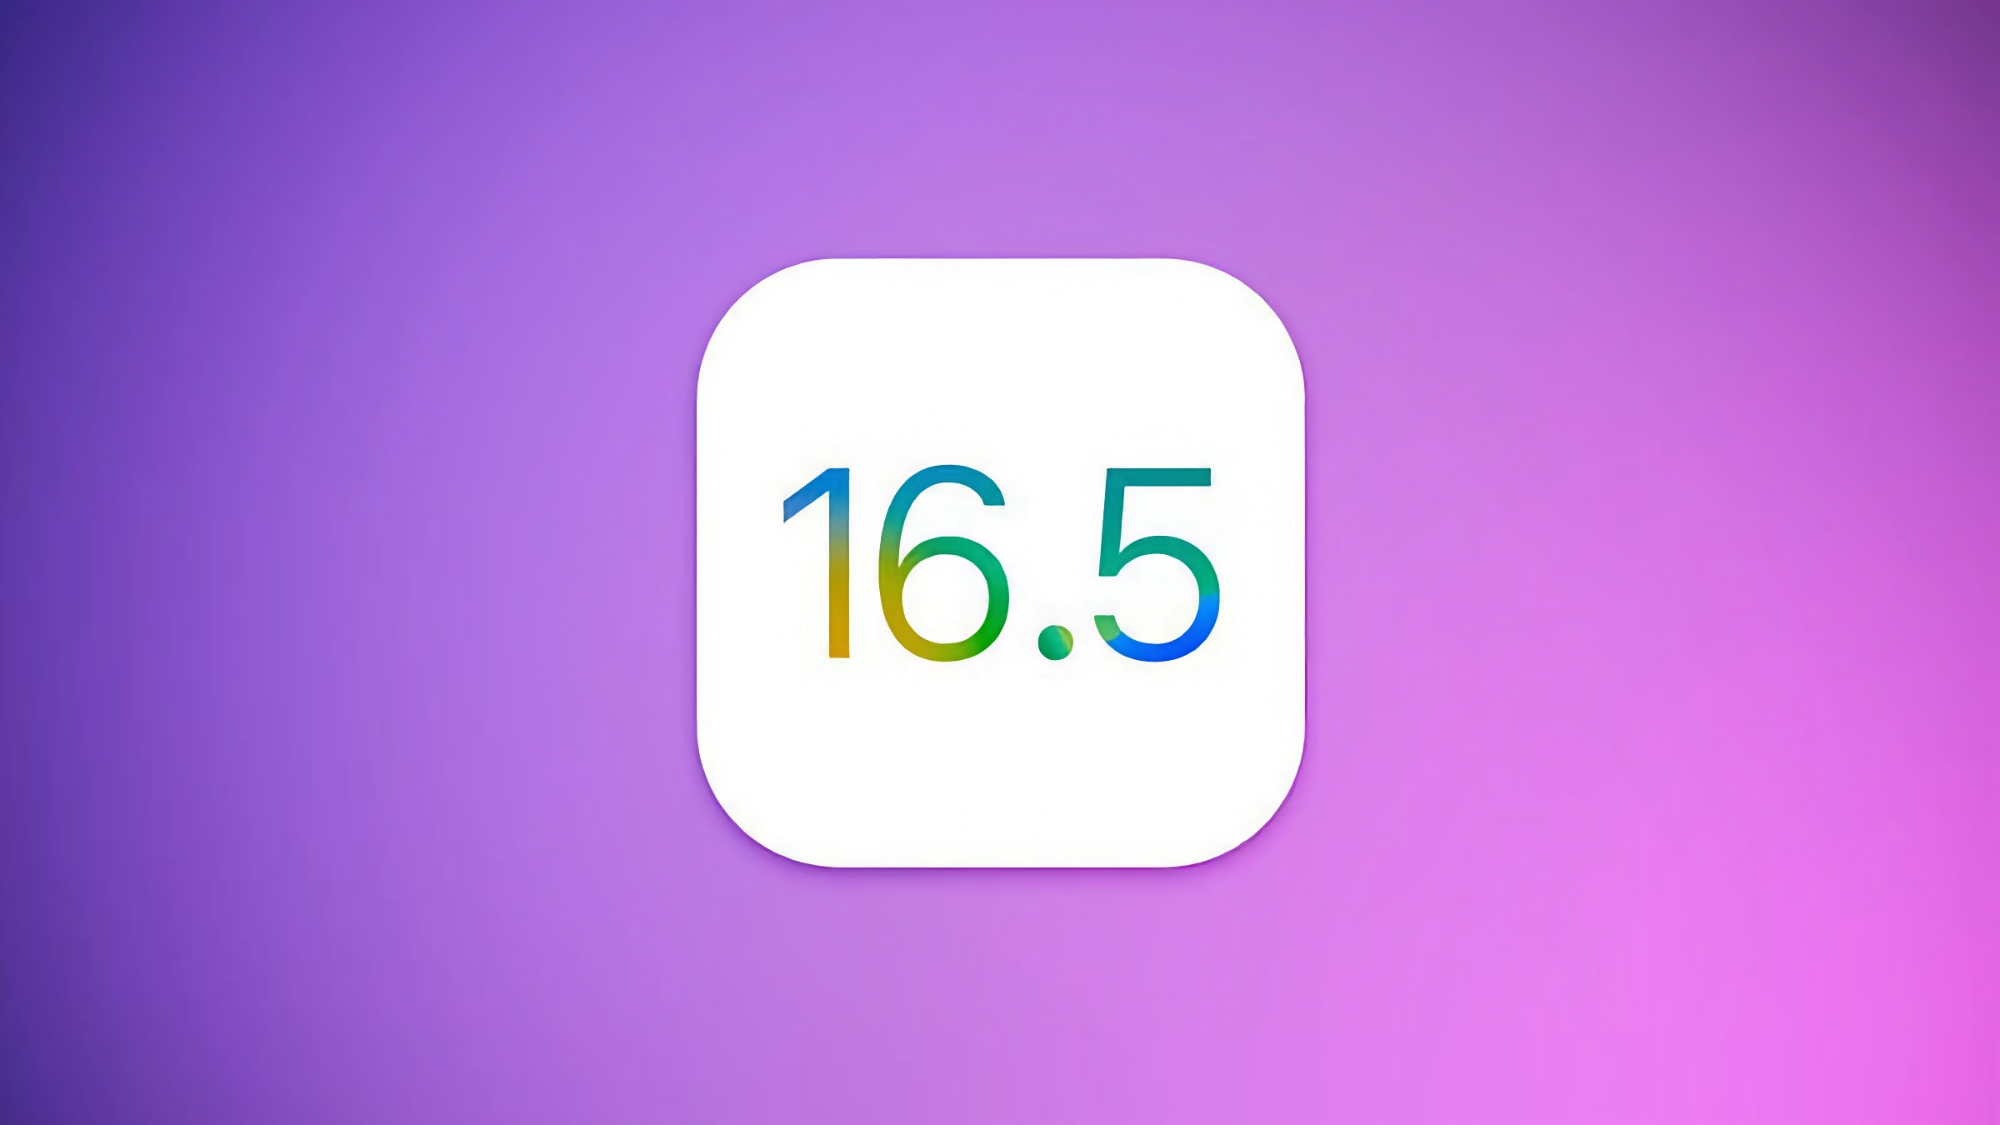 Apple випустила третю бета-версію iOS 16.5